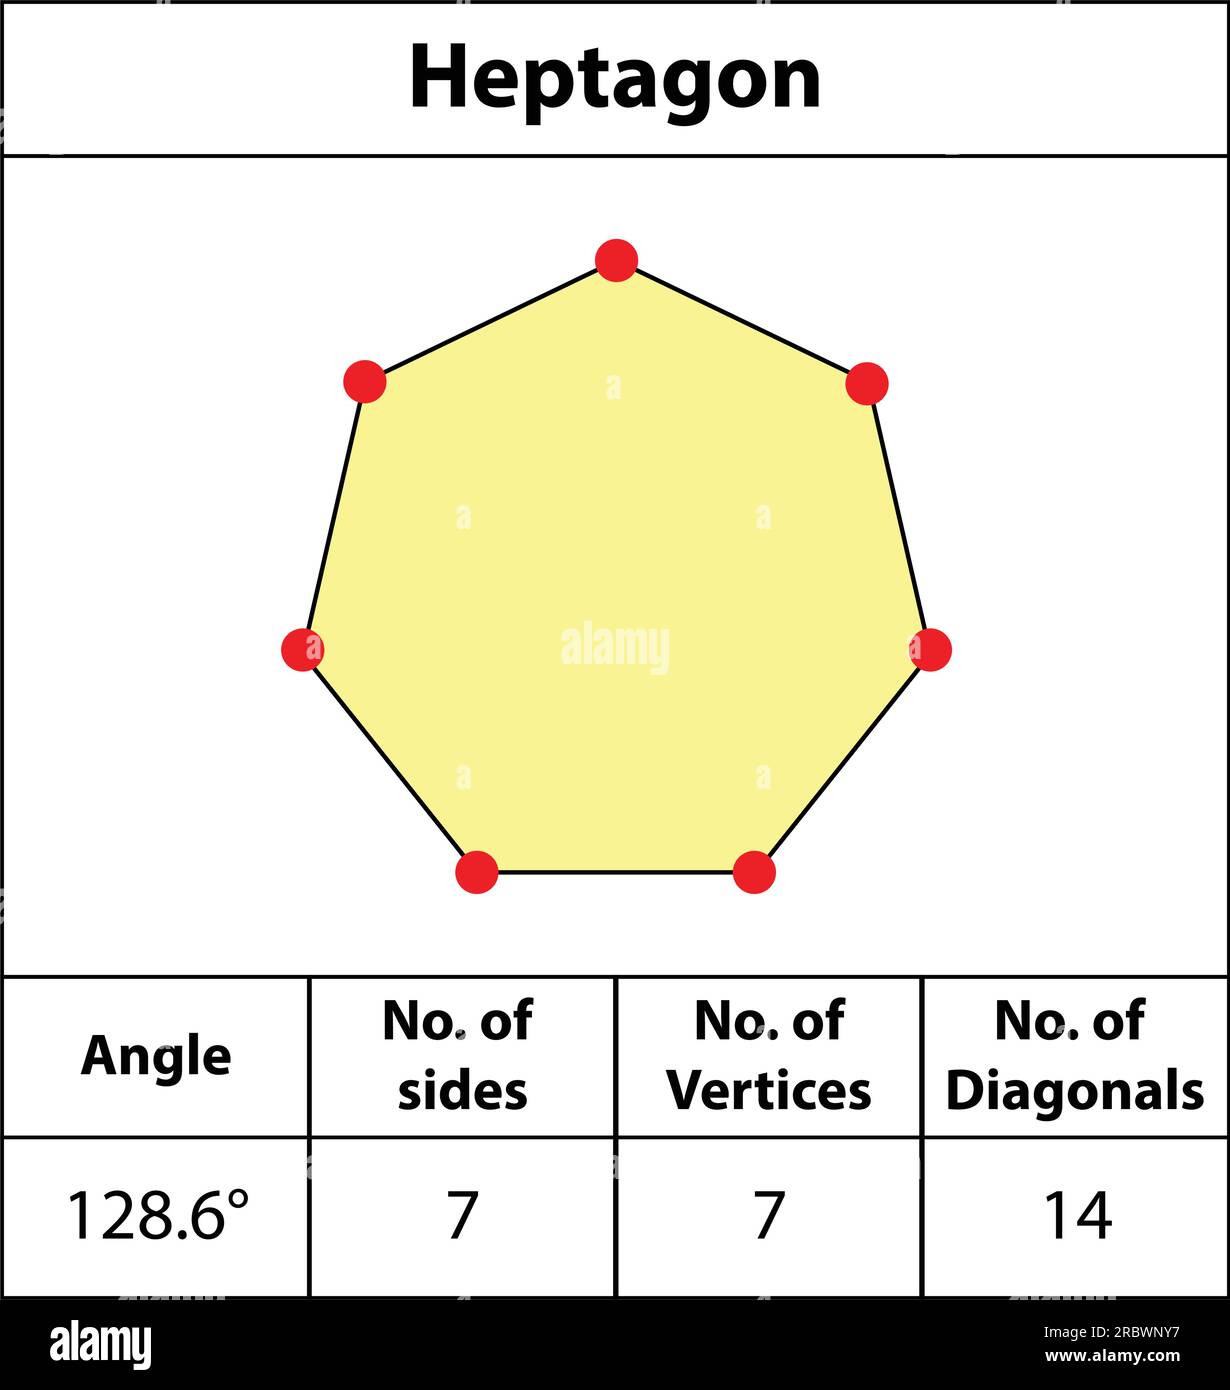 Heptagon. Formen von Winkeln, Eckpunkten, Seiten, Diagonalen. Mit Farben, Feldern für rote Punkte, Kanten, Mathematikbildern. Vektorsymbol für Rechteckform. Stock Vektor